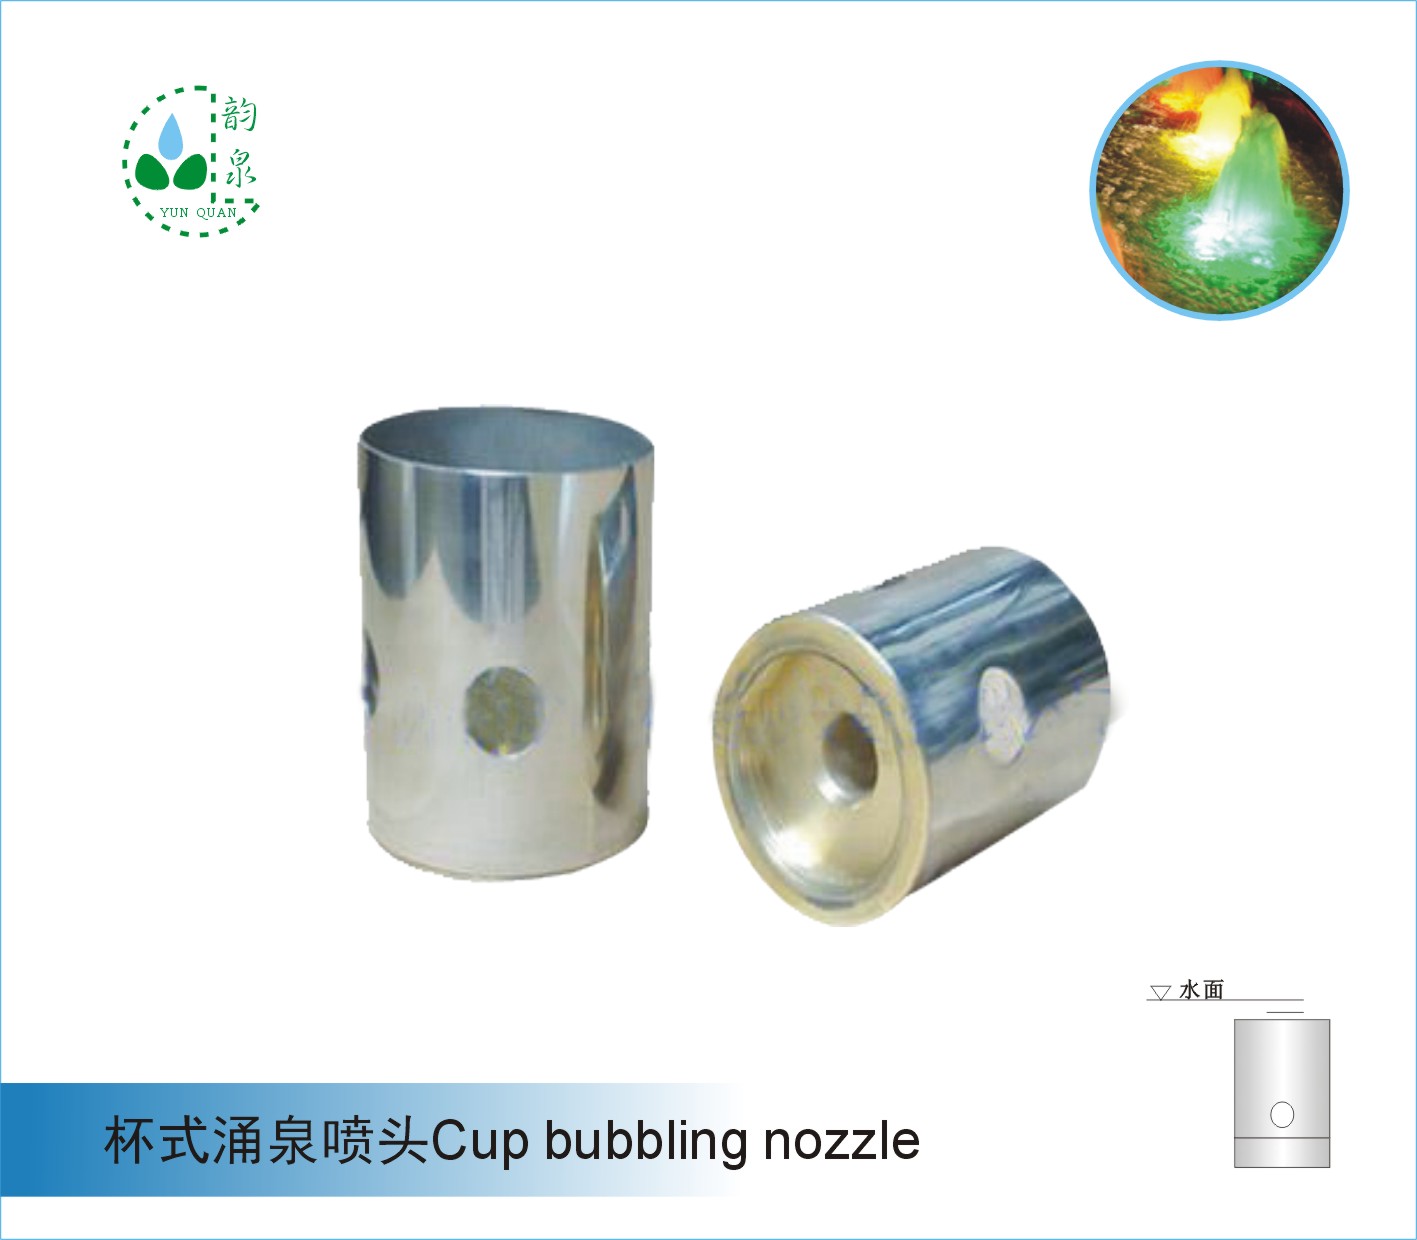 杯式涌泉噴頭Cup-type foaming nozzle